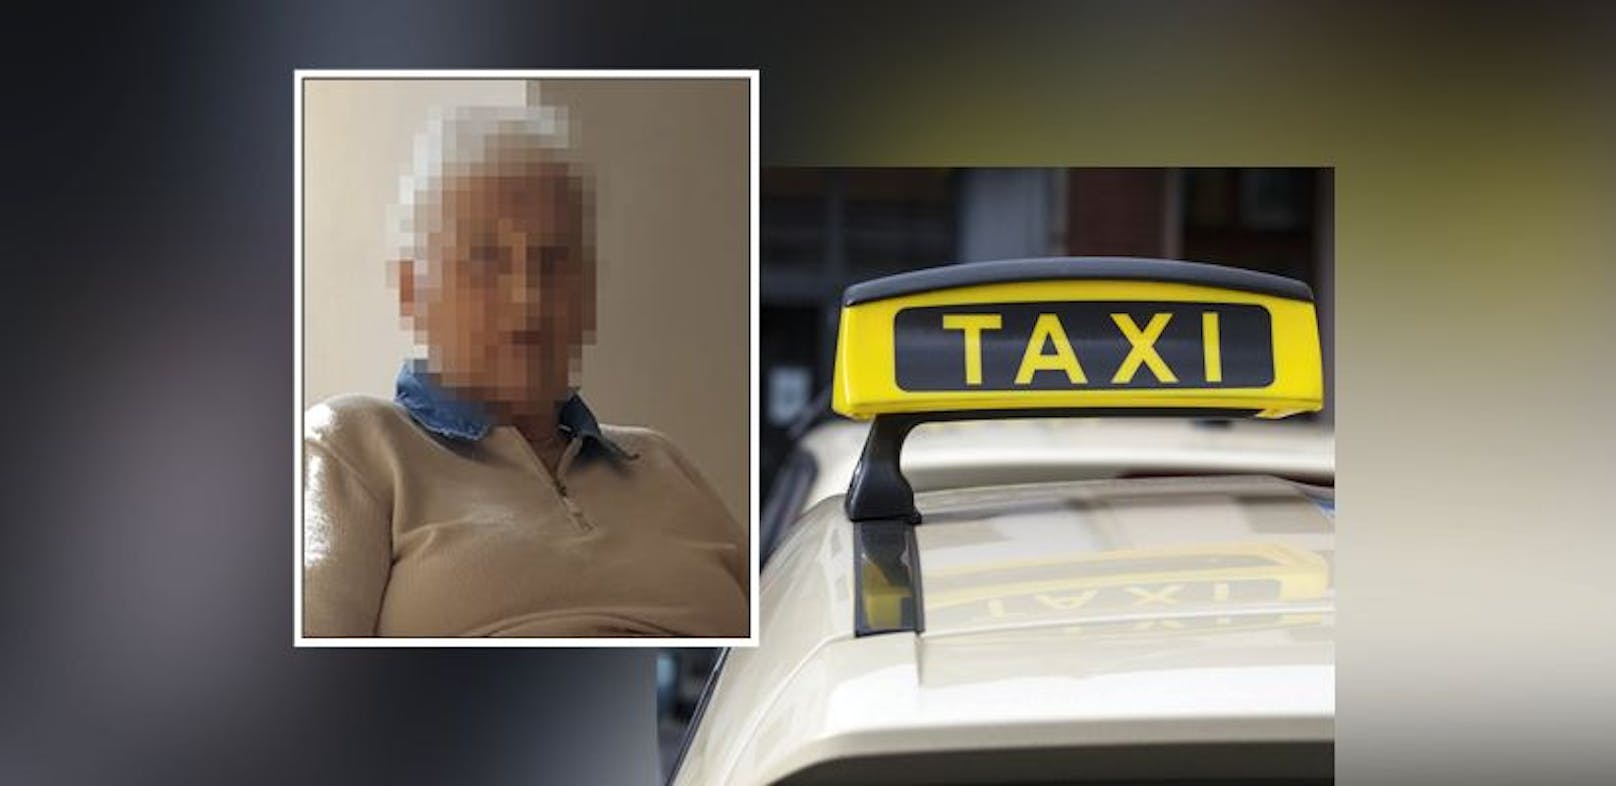 "Meine Mutter fuhr 9 km mit Taxi, dann fehlten 100 €"